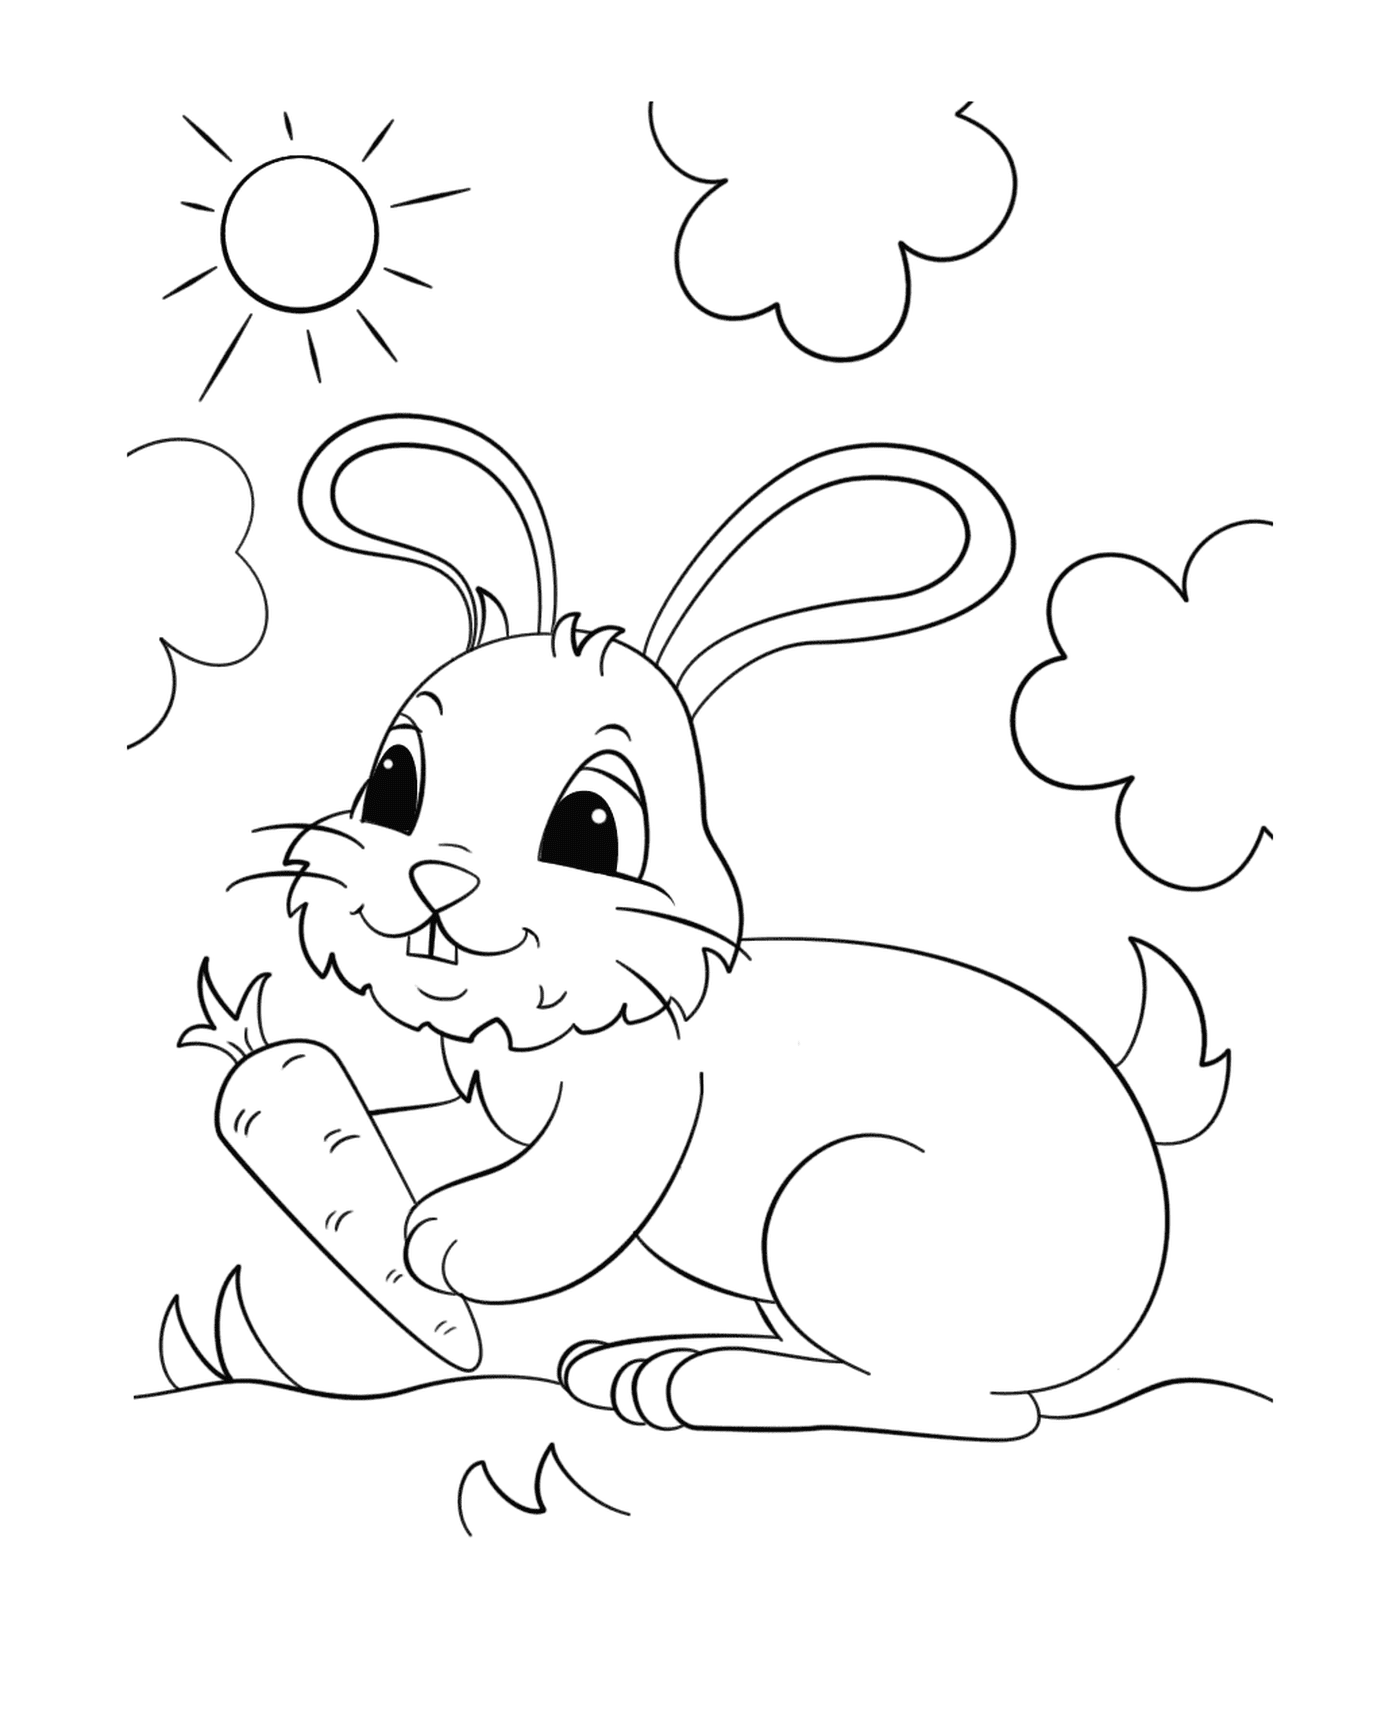  Kaninchen, die eine Karotte unter der Sonne halten 